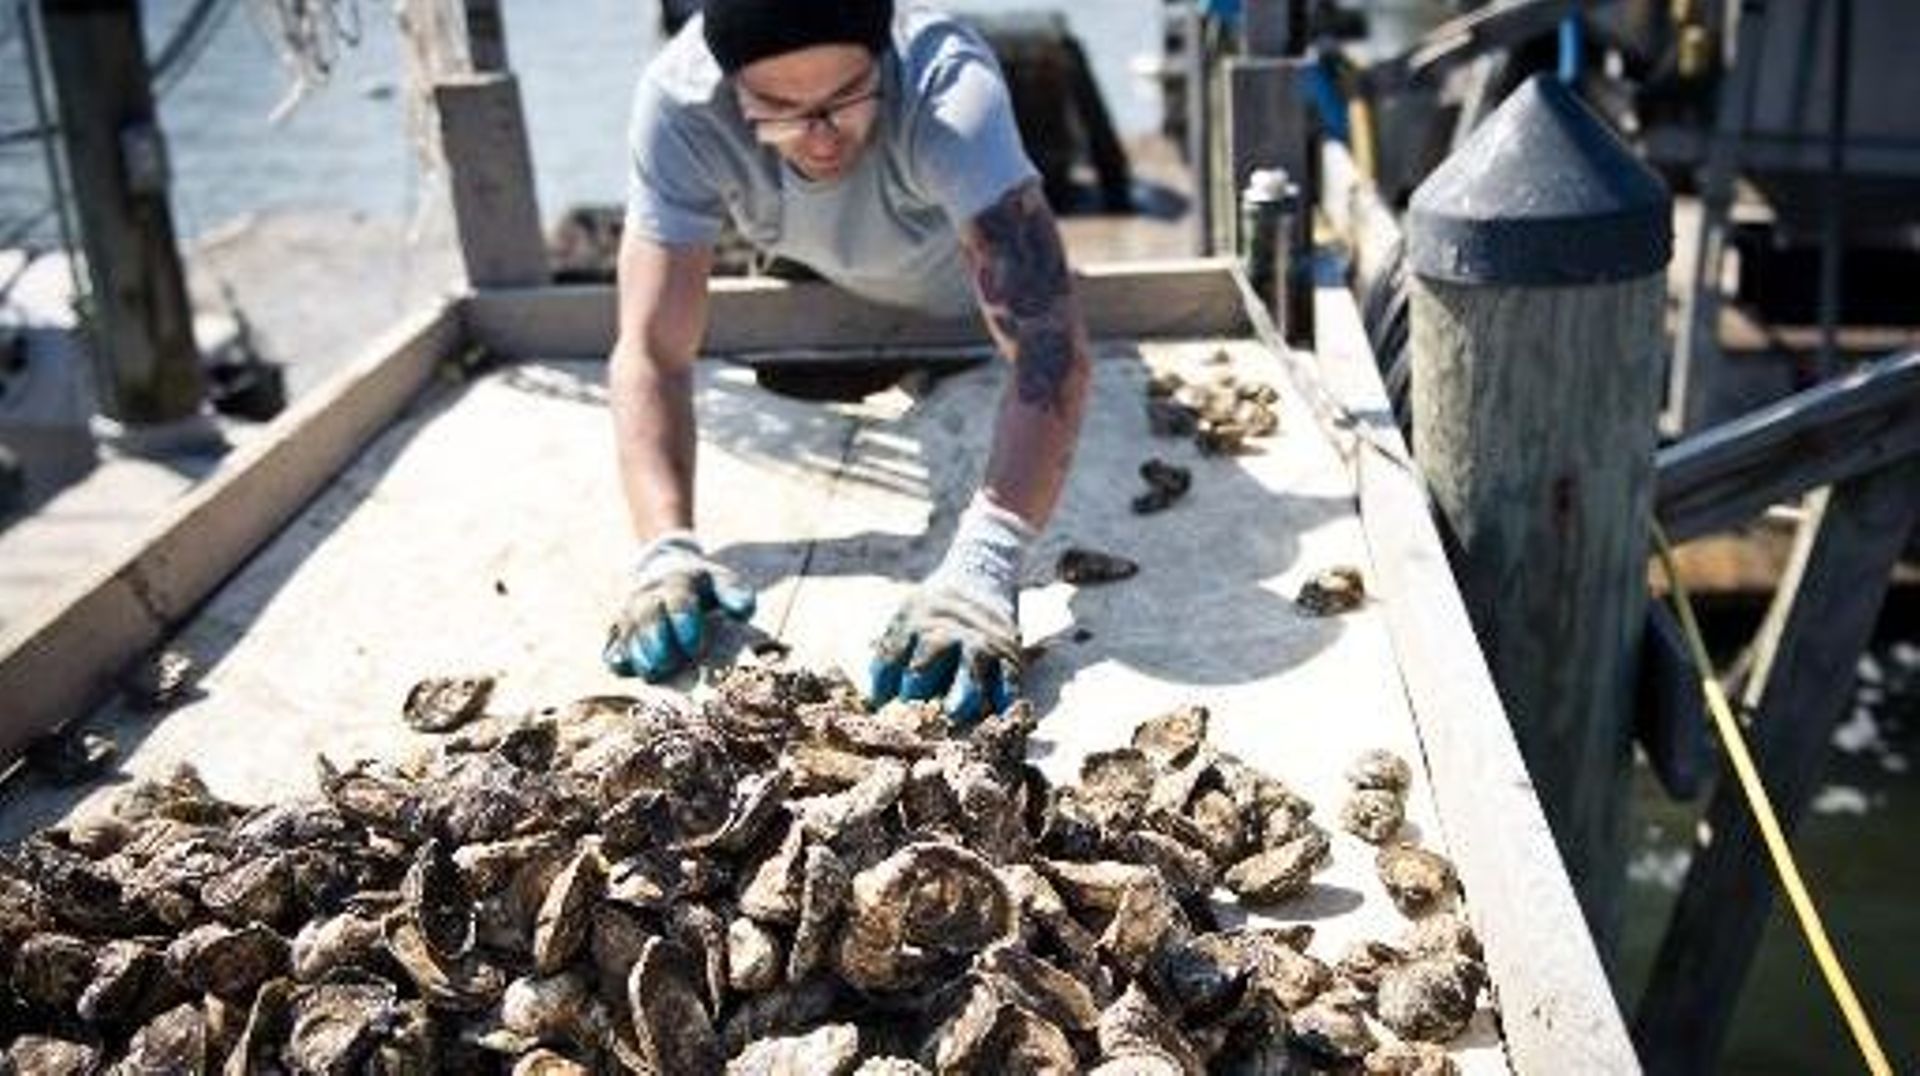 Un employé de la société Hollywood Oyster trie des huîtres le 20 mars 2014 dans la baie de Chesapeake, dans le Maryland